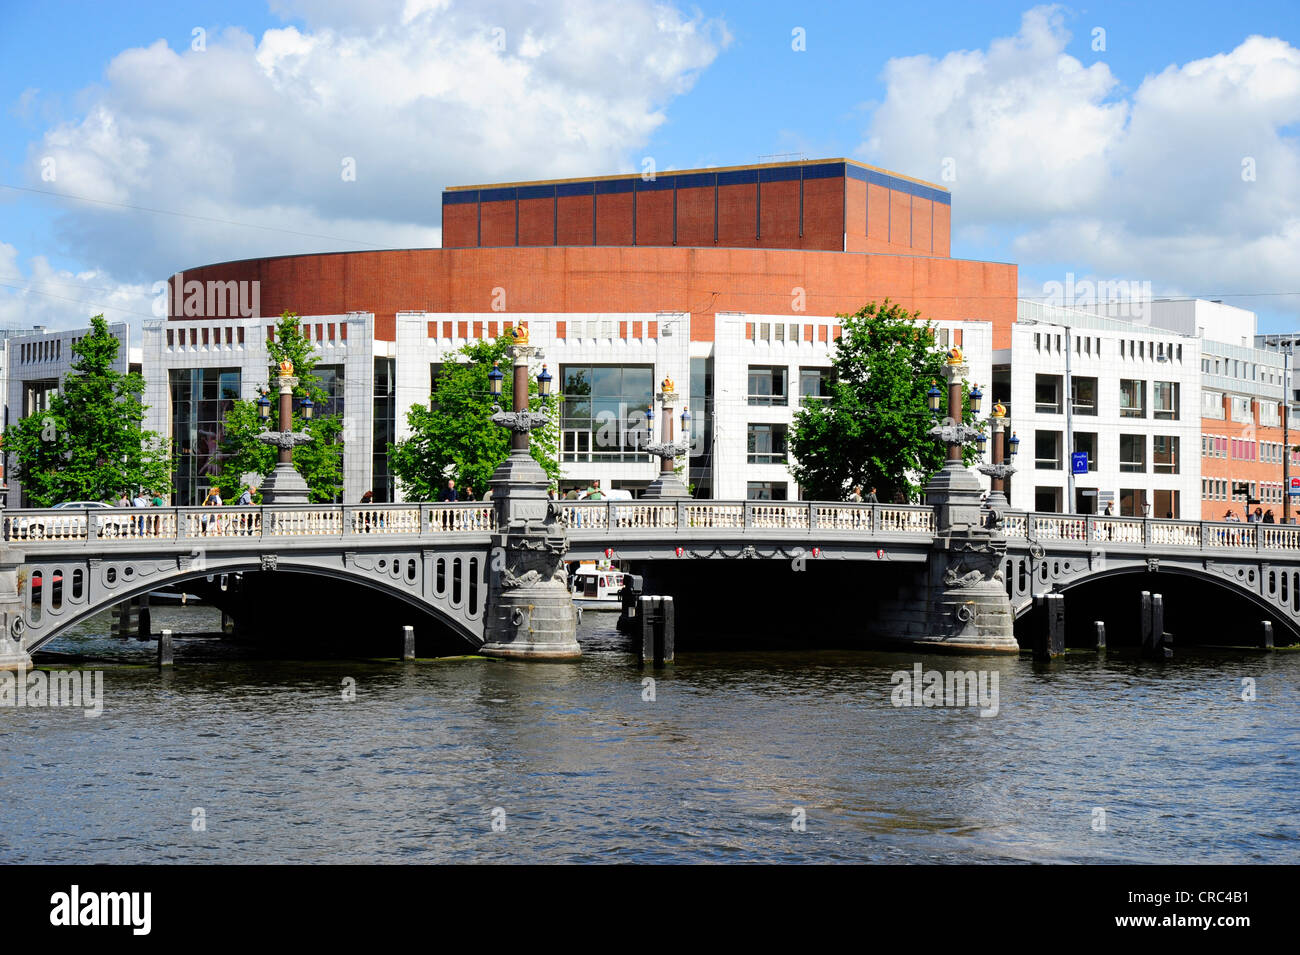 Blauwbrug-Brücke über den Fluss Amstel, Stopera Opernhaus am Waterloo Plein Platz im Rücken, City Centre, Amsterdam Stockfoto